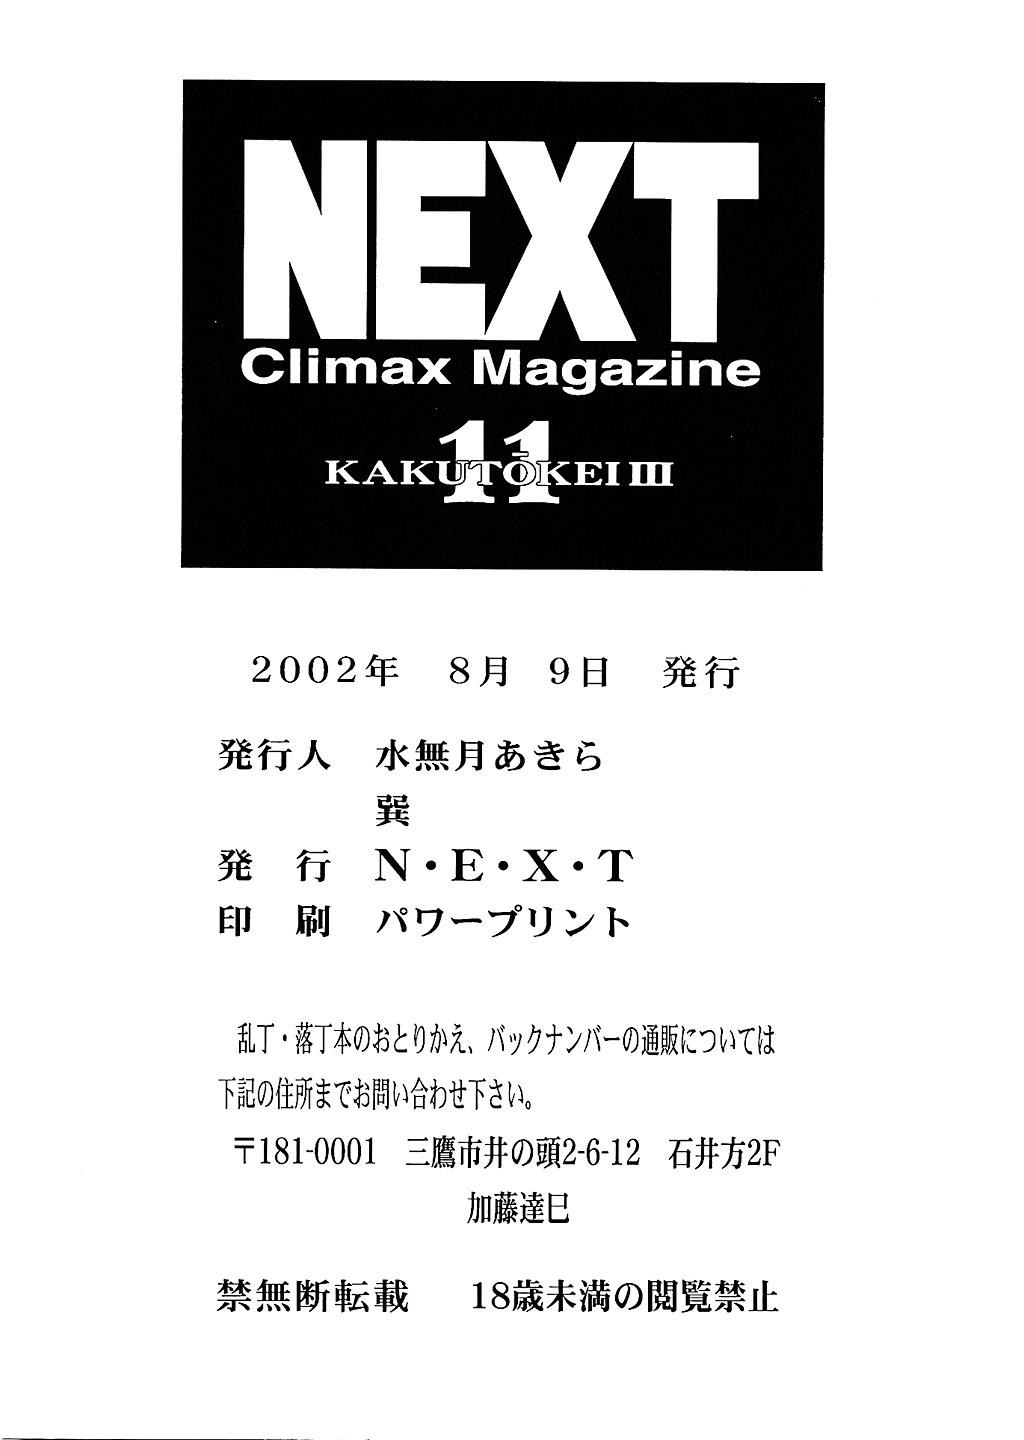 Next Climax Magazine 11 - Kakutokei III 96